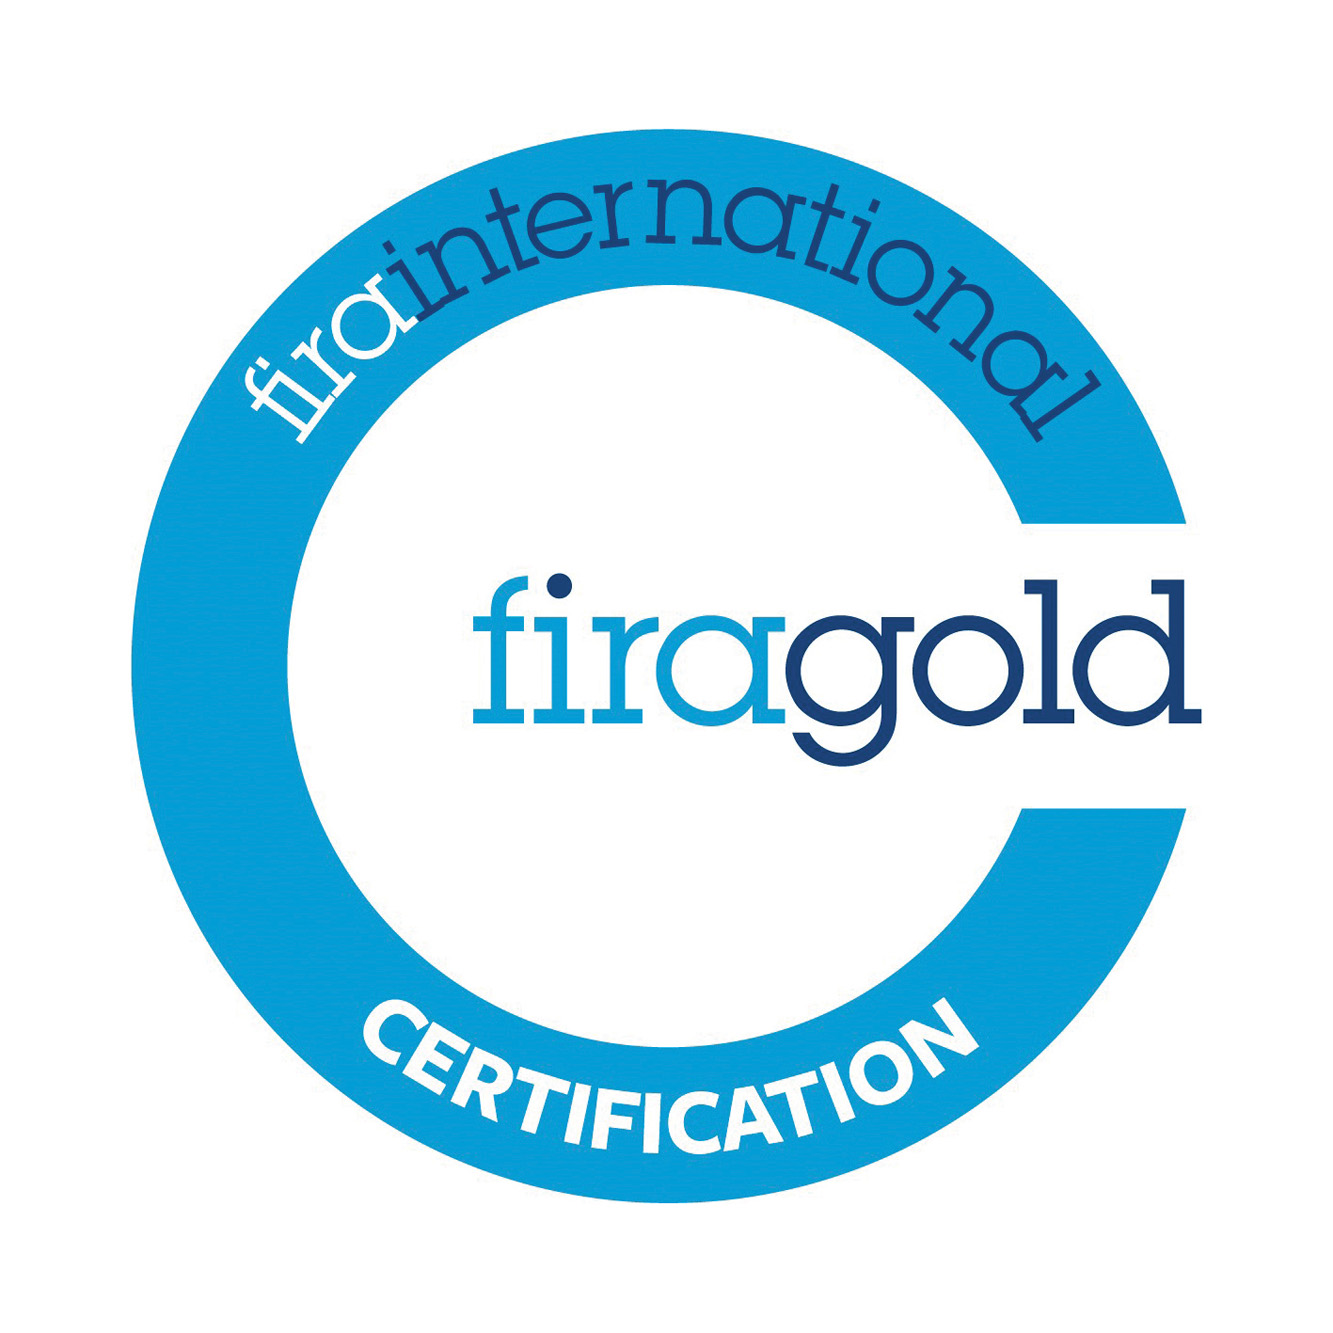 firagold certification